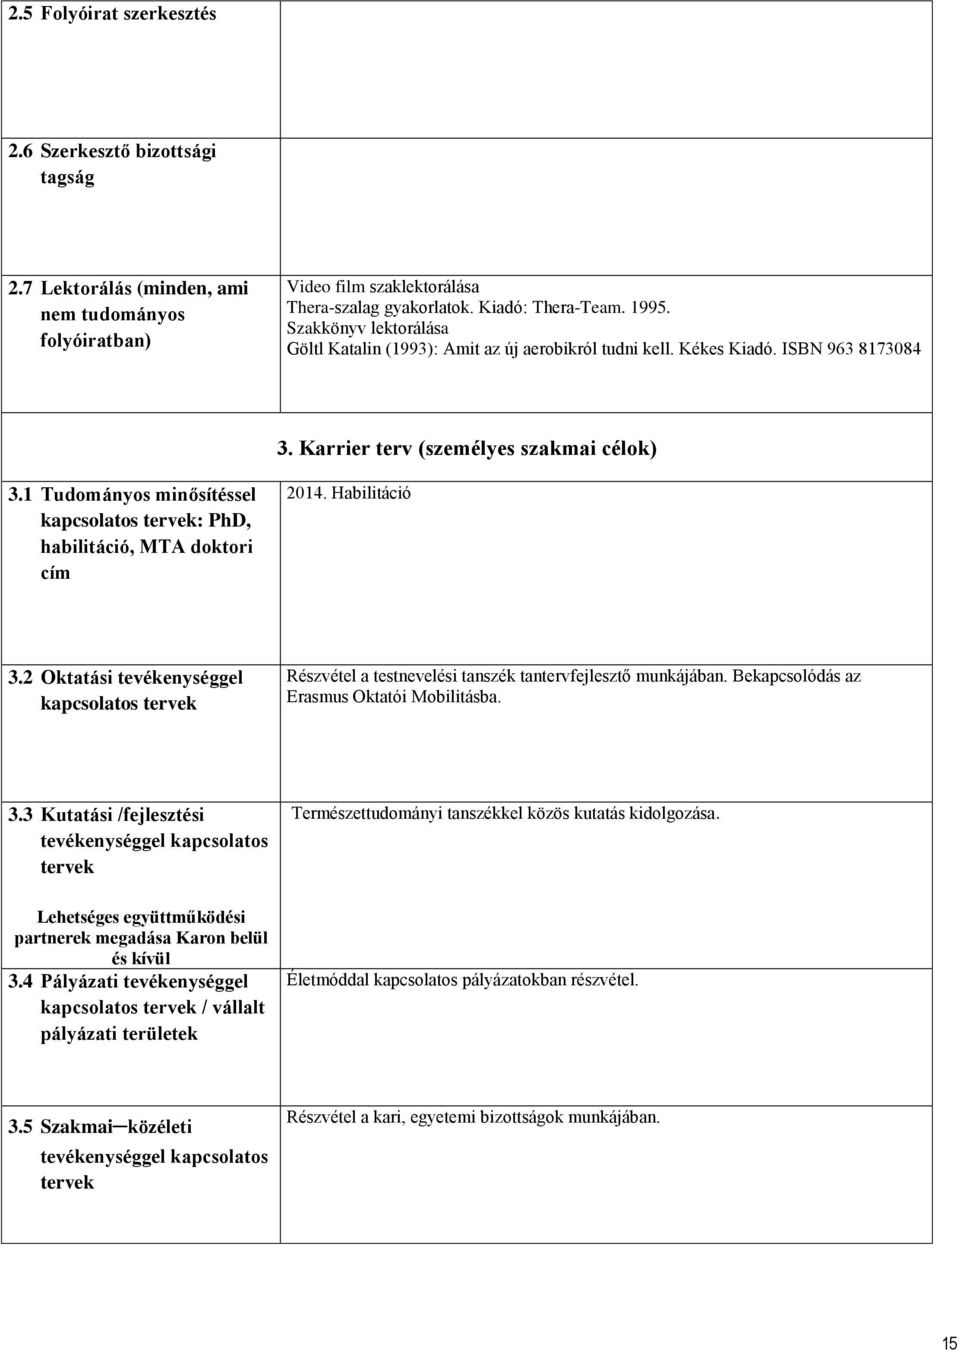 1 Tudományos minősítéssel kapcsolatos tervek: PhD, habilitáció, MTA doktori cím 2014. Habilitáció 3.